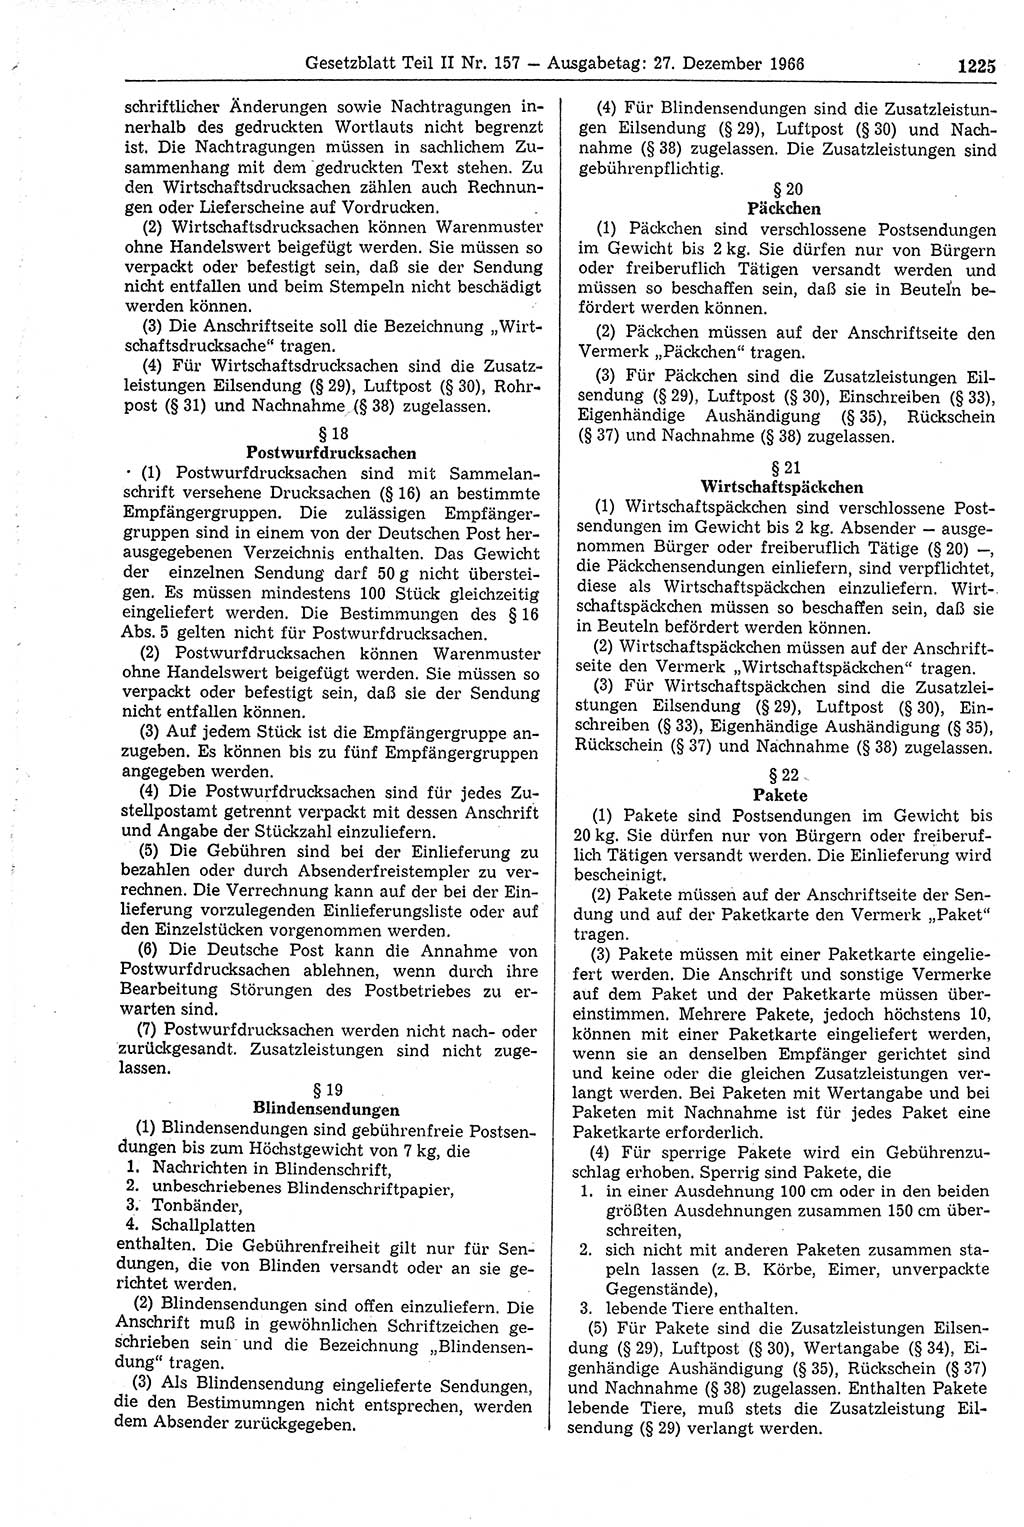 Gesetzblatt (GBl.) der Deutschen Demokratischen Republik (DDR) Teil ⅠⅠ 1966, Seite 1225 (GBl. DDR ⅠⅠ 1966, S. 1225)